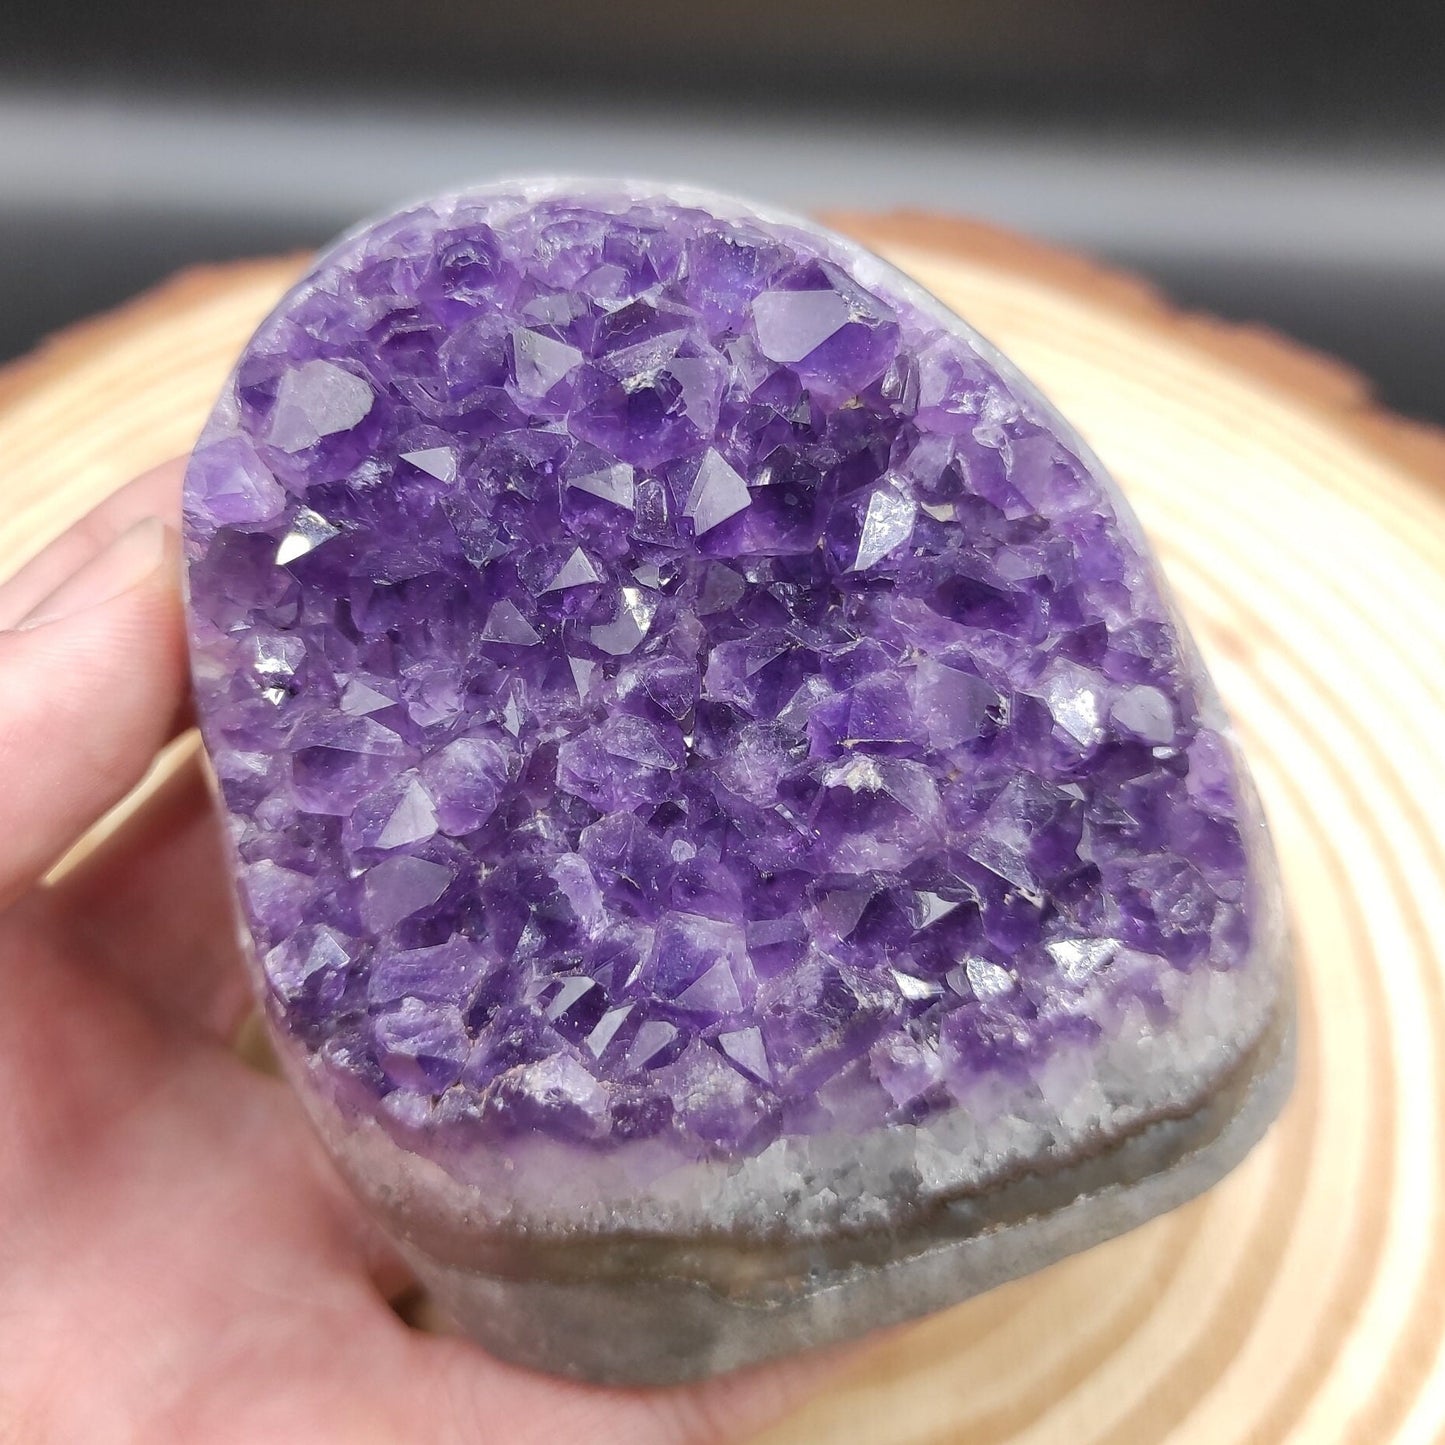 479g Amethyst Geode Cluster Purple Amethyst from South Brazil Amethyst Gemstone Raw Amethyst Rough Amethyst Desk Crystal Natural Crystals